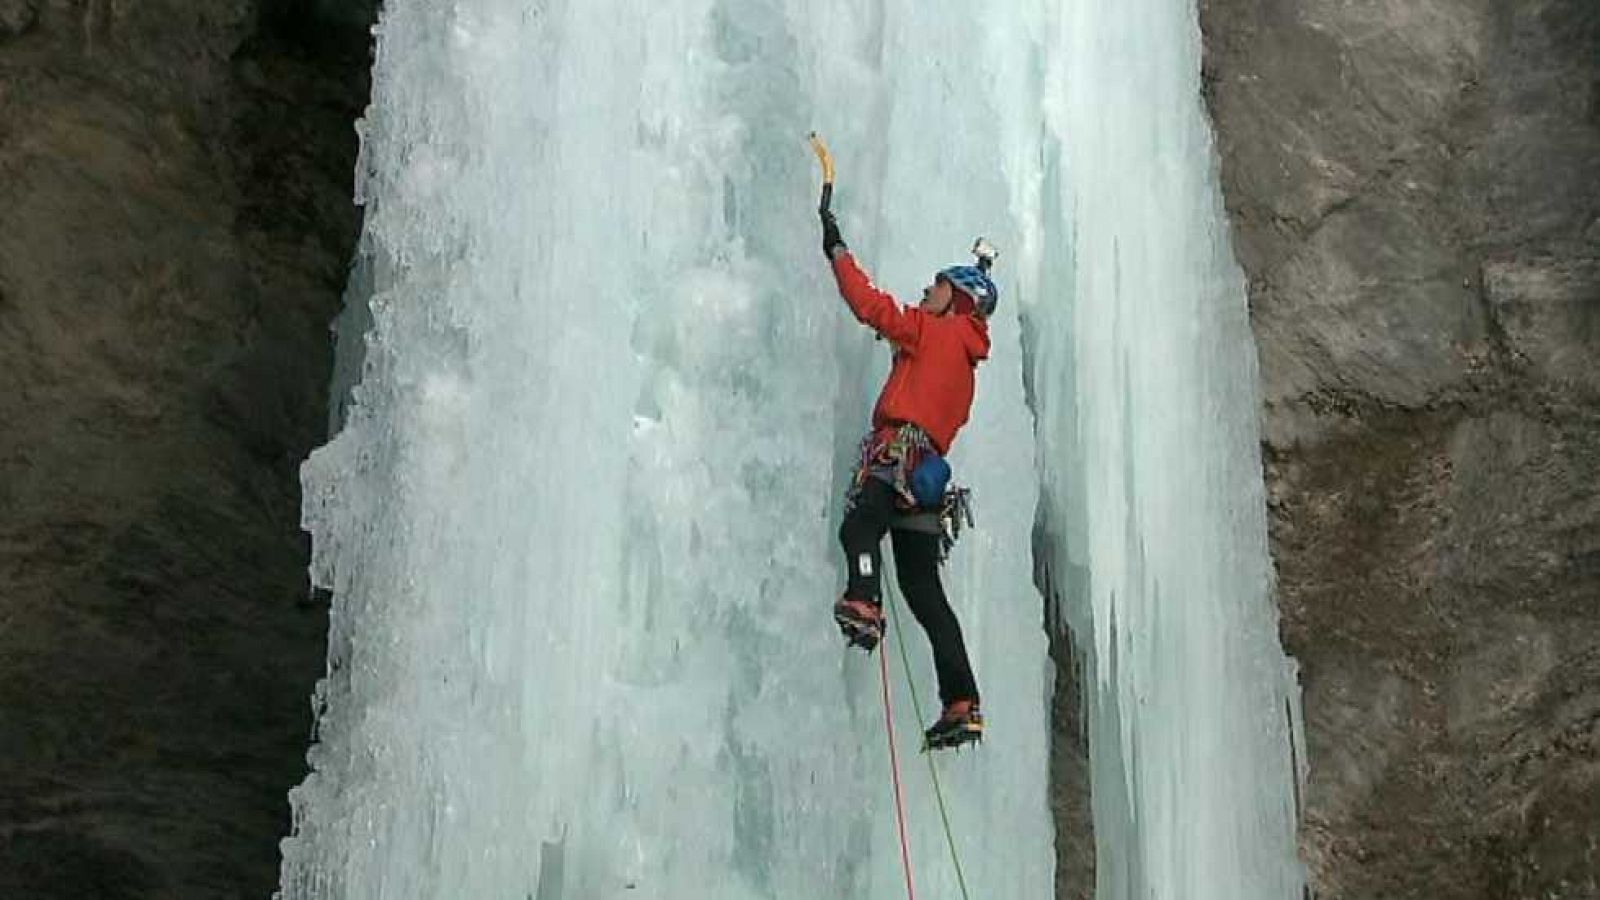 Al filo de lo imposible - 'Una noche con Calipso': escalada en cascadas de hielo de los Alpes (1)  - Ver ahora